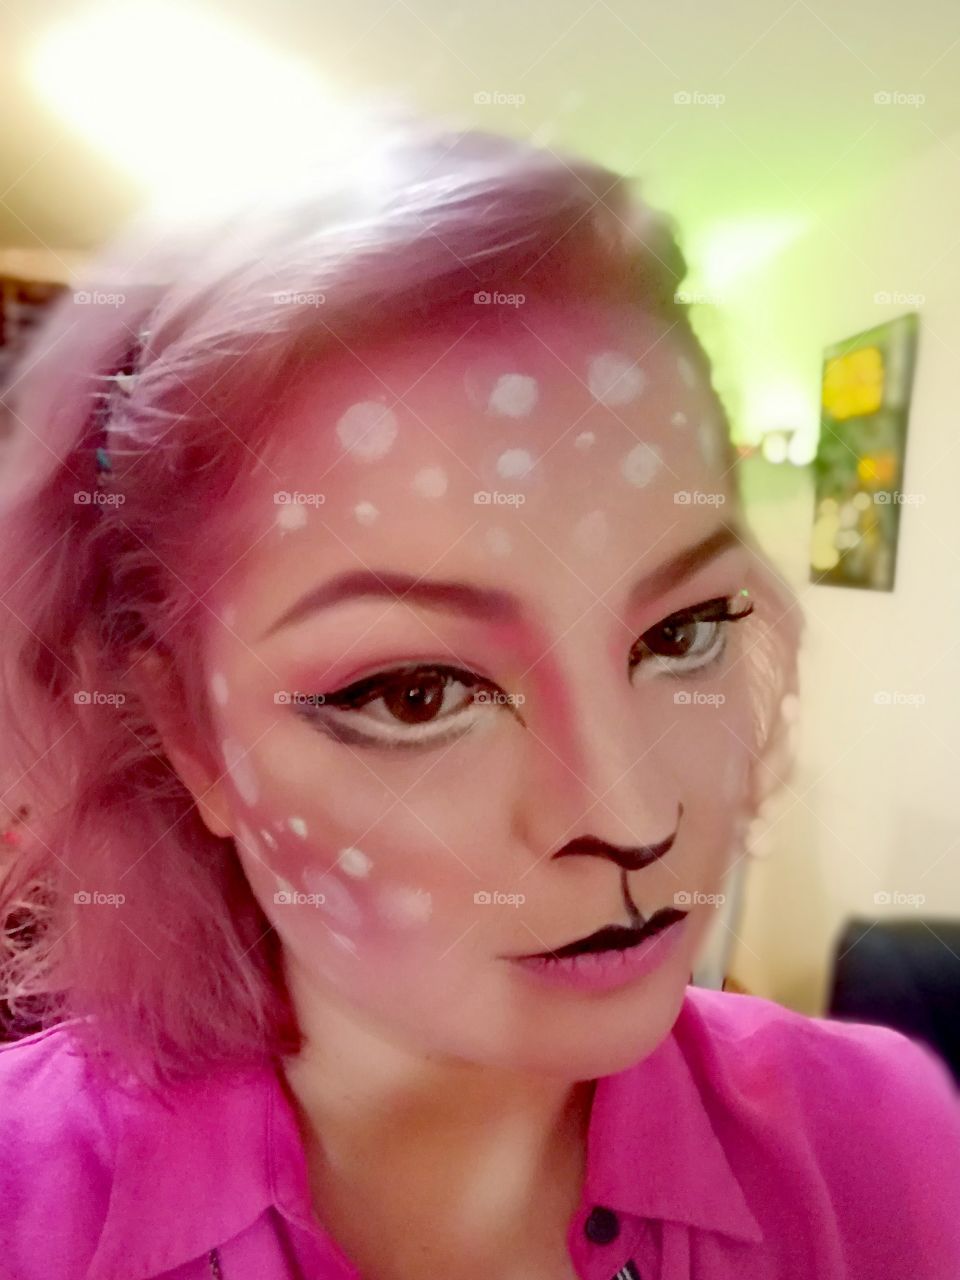 Deer Halloween makeup pink